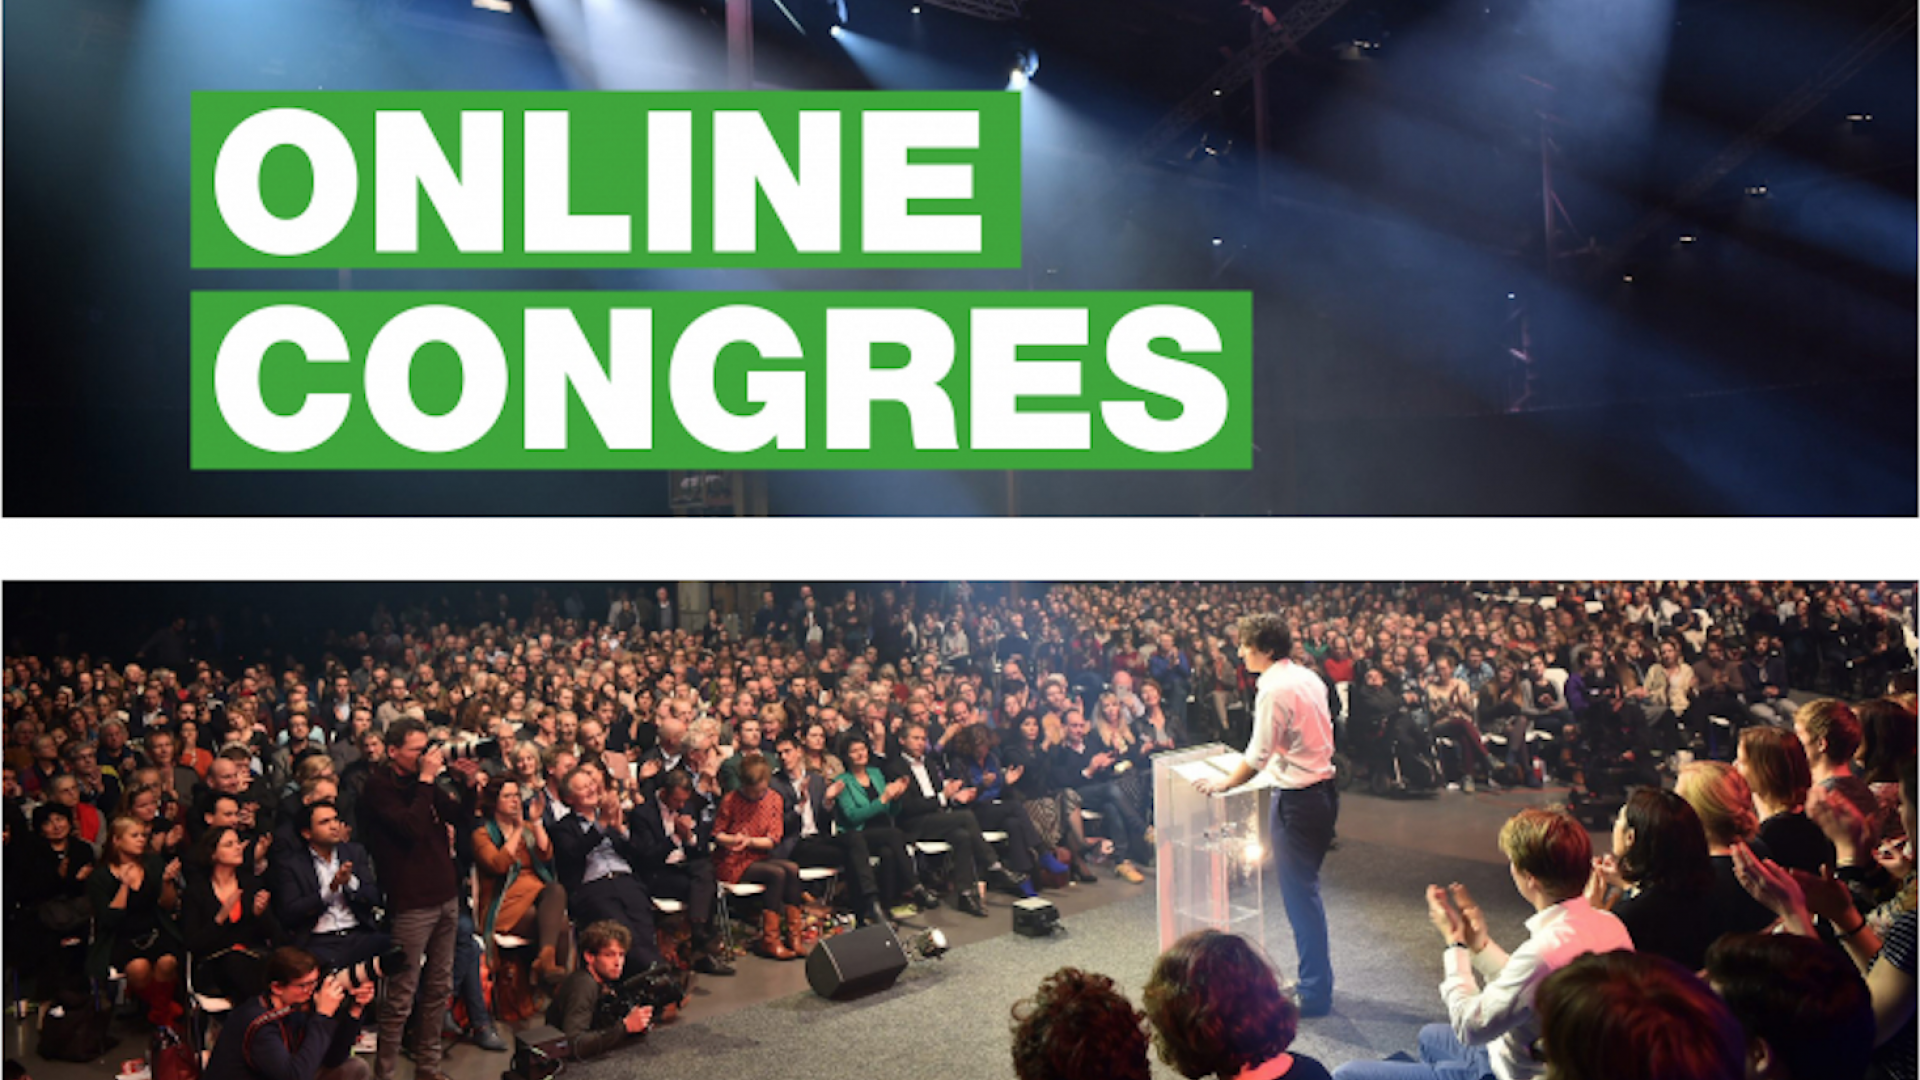 Online congres.png